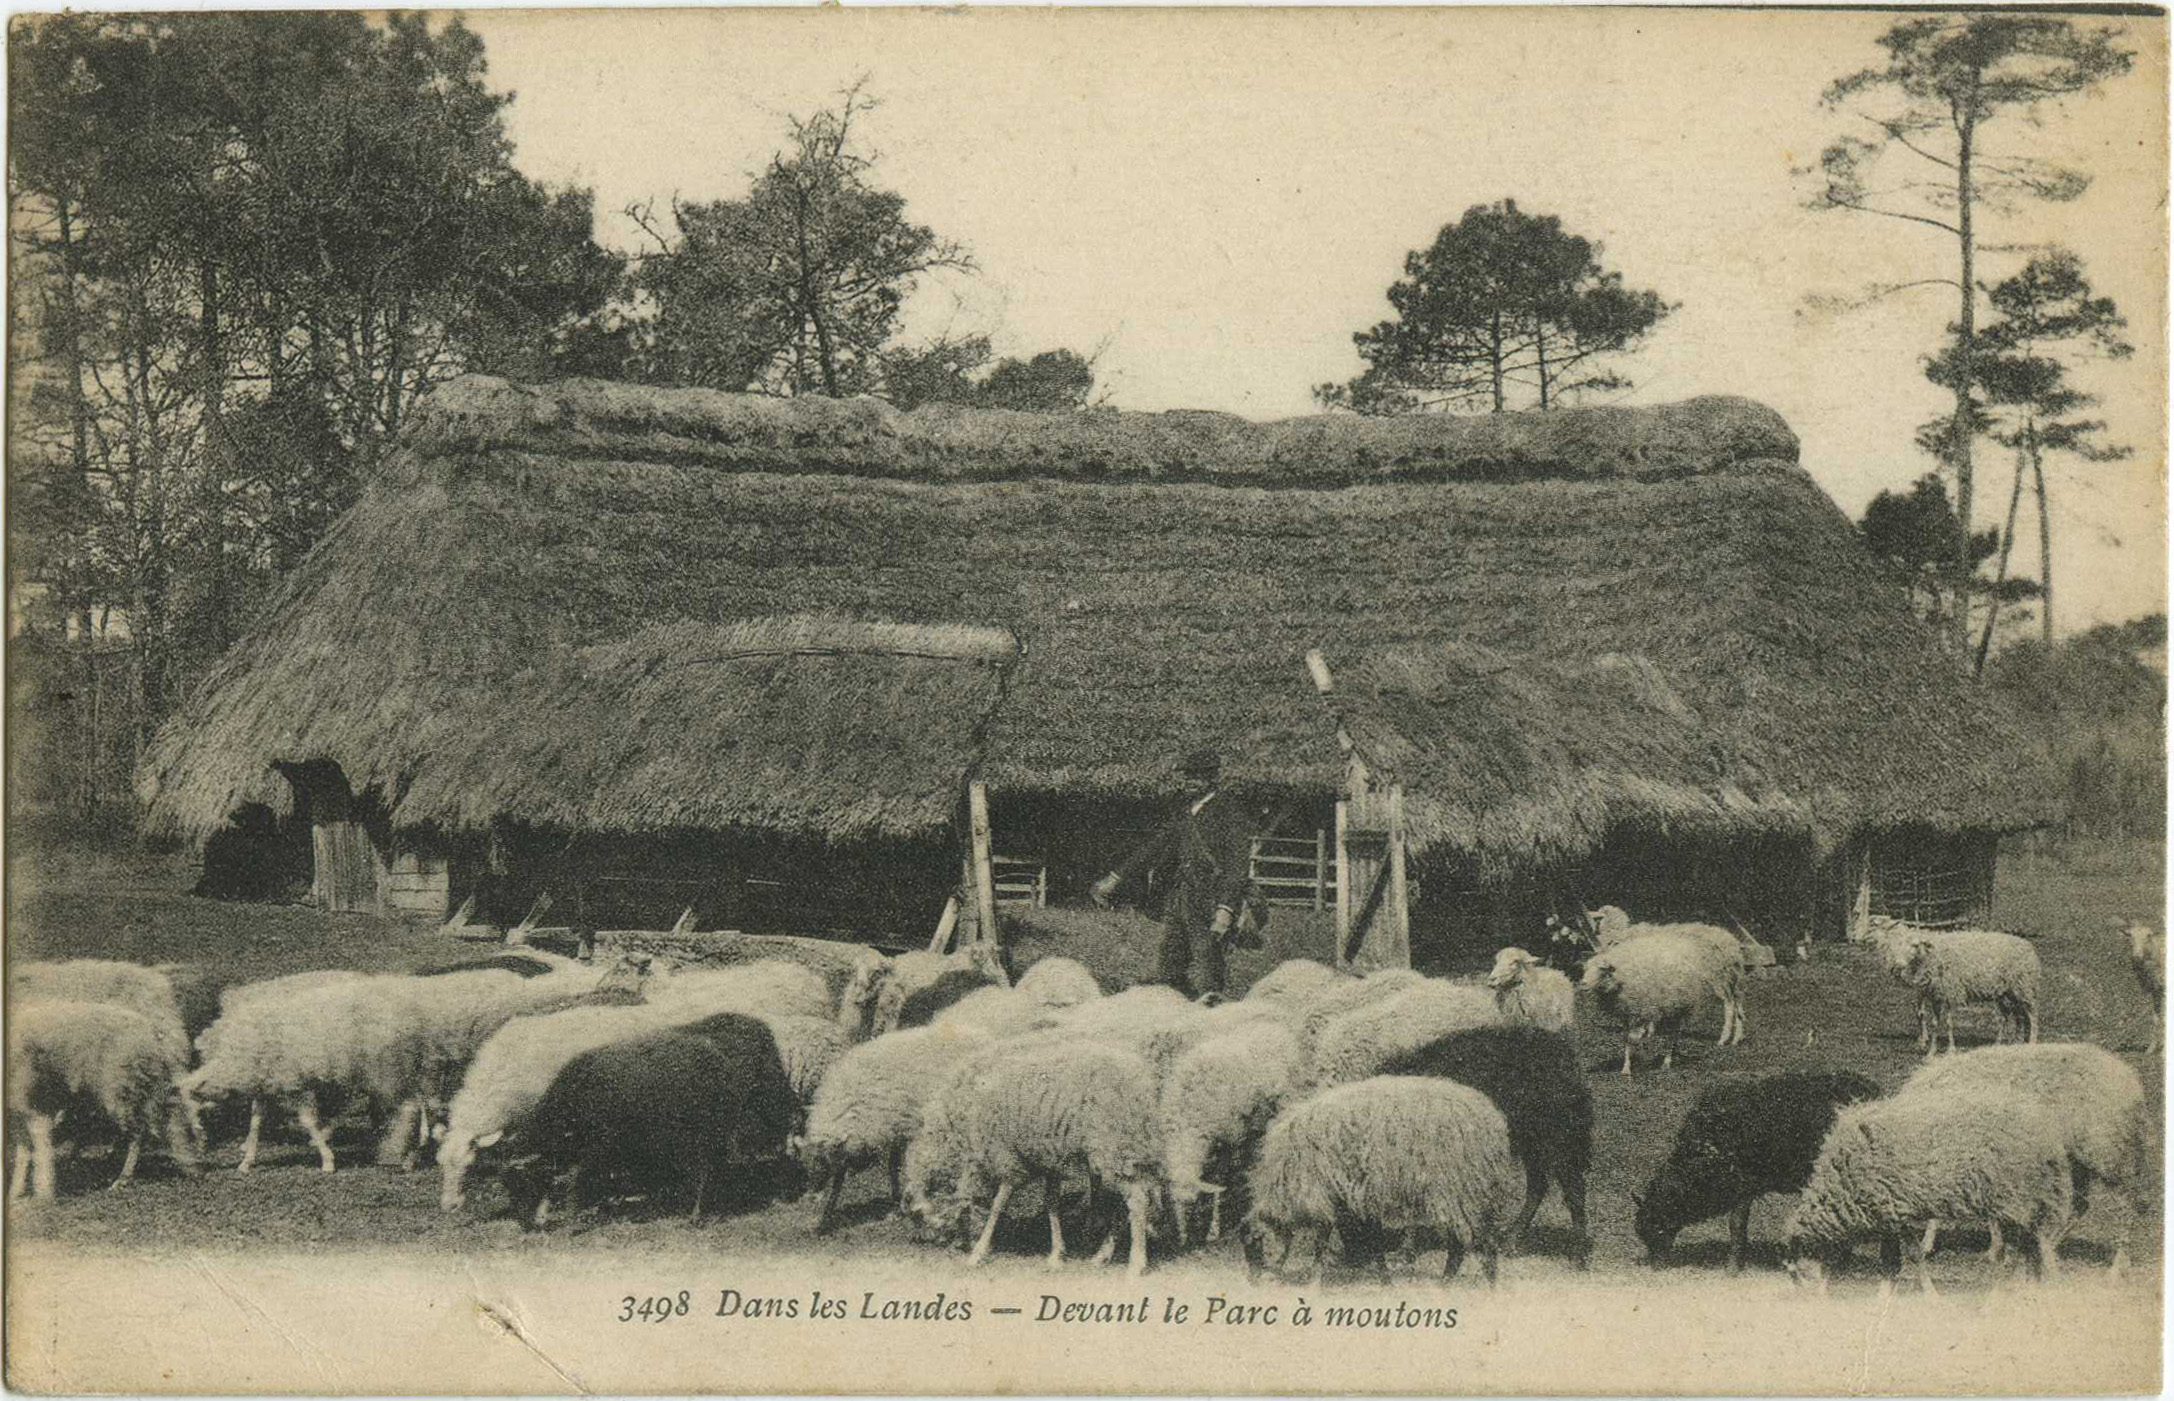 Landes - Dans les Landes - Devant le Parc à moutons